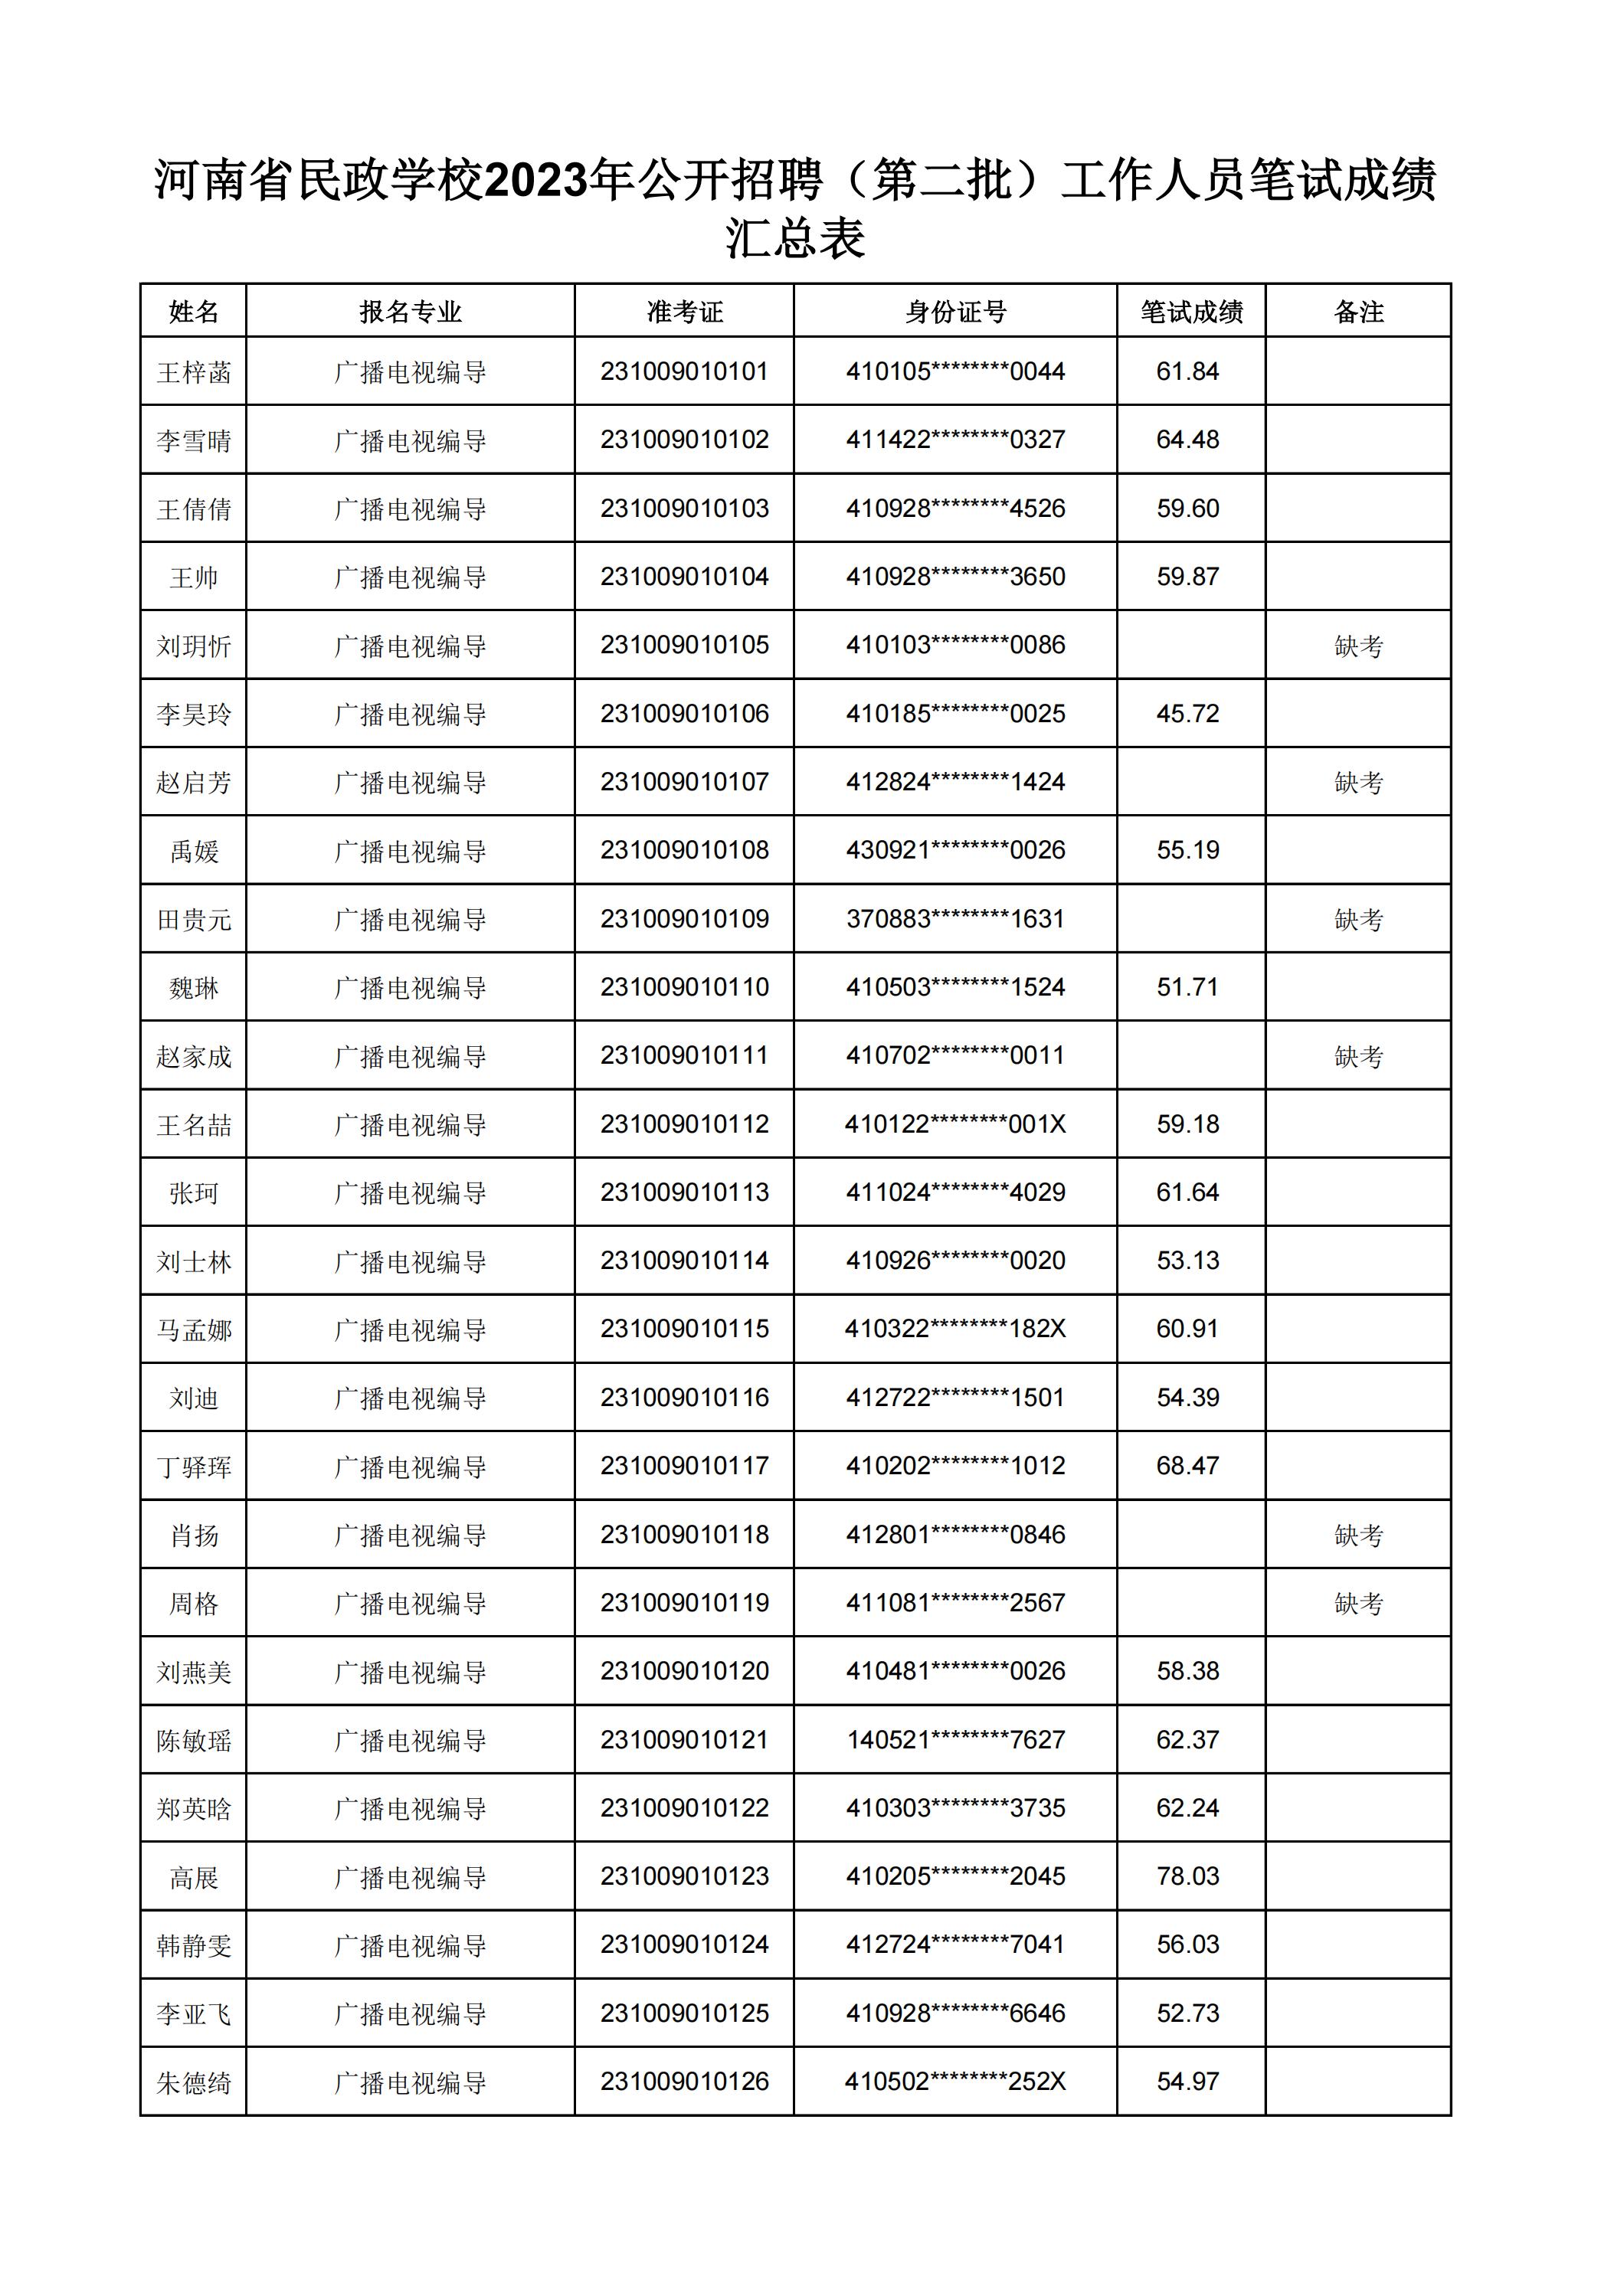 河南省民政学校2023年公开招聘（第二批）工作人员笔试成绩汇总表(2)_00.jpg